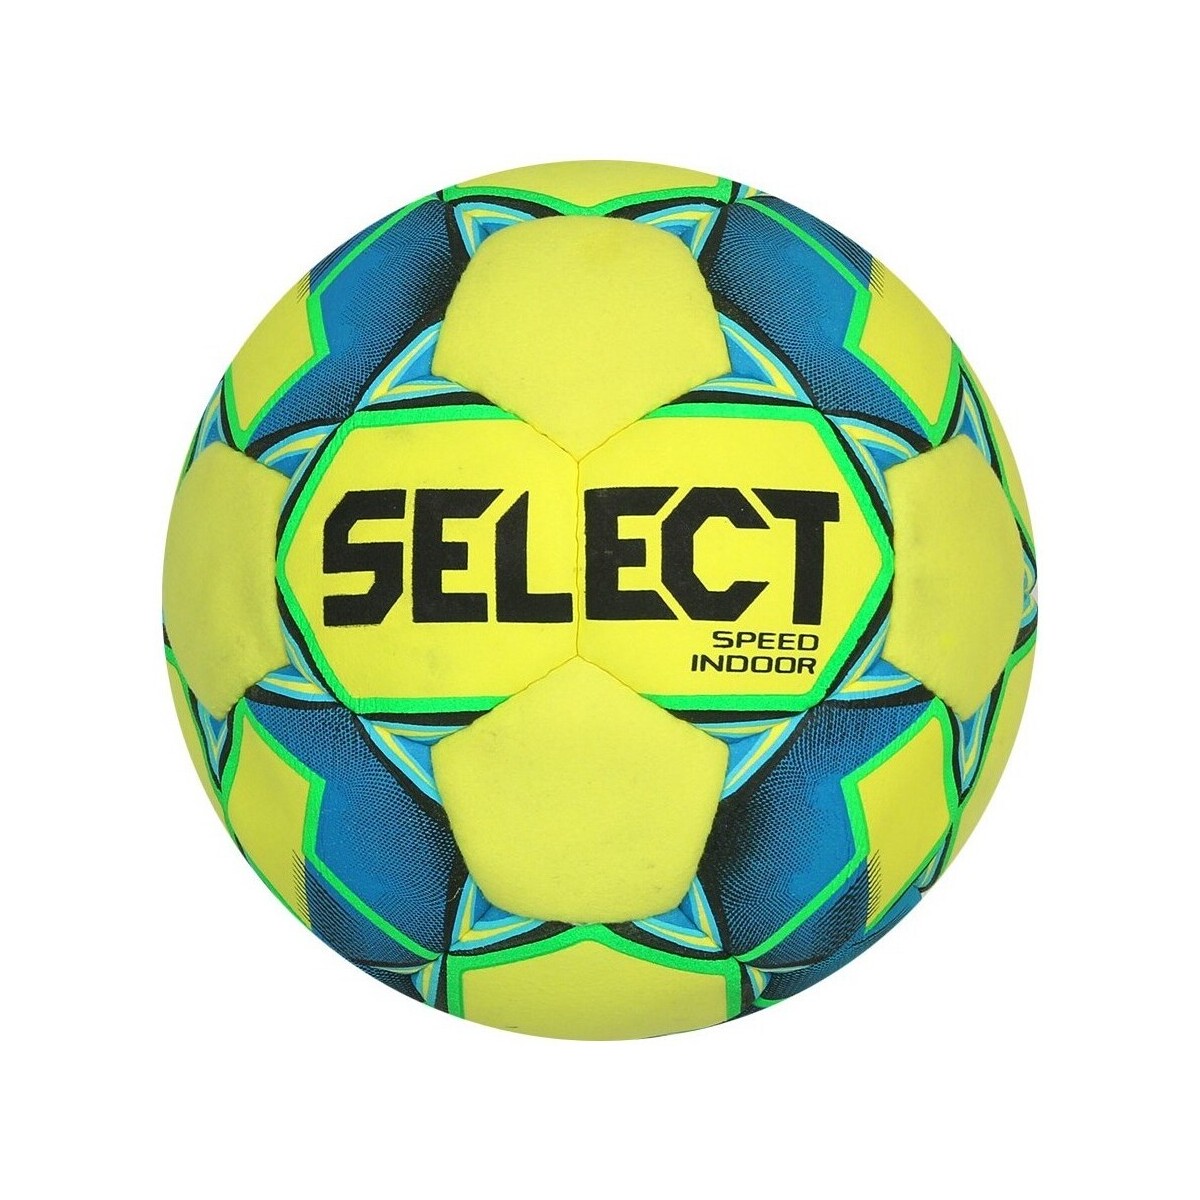 Accessoires Ballons de sport Select Speed Indoor Jaune